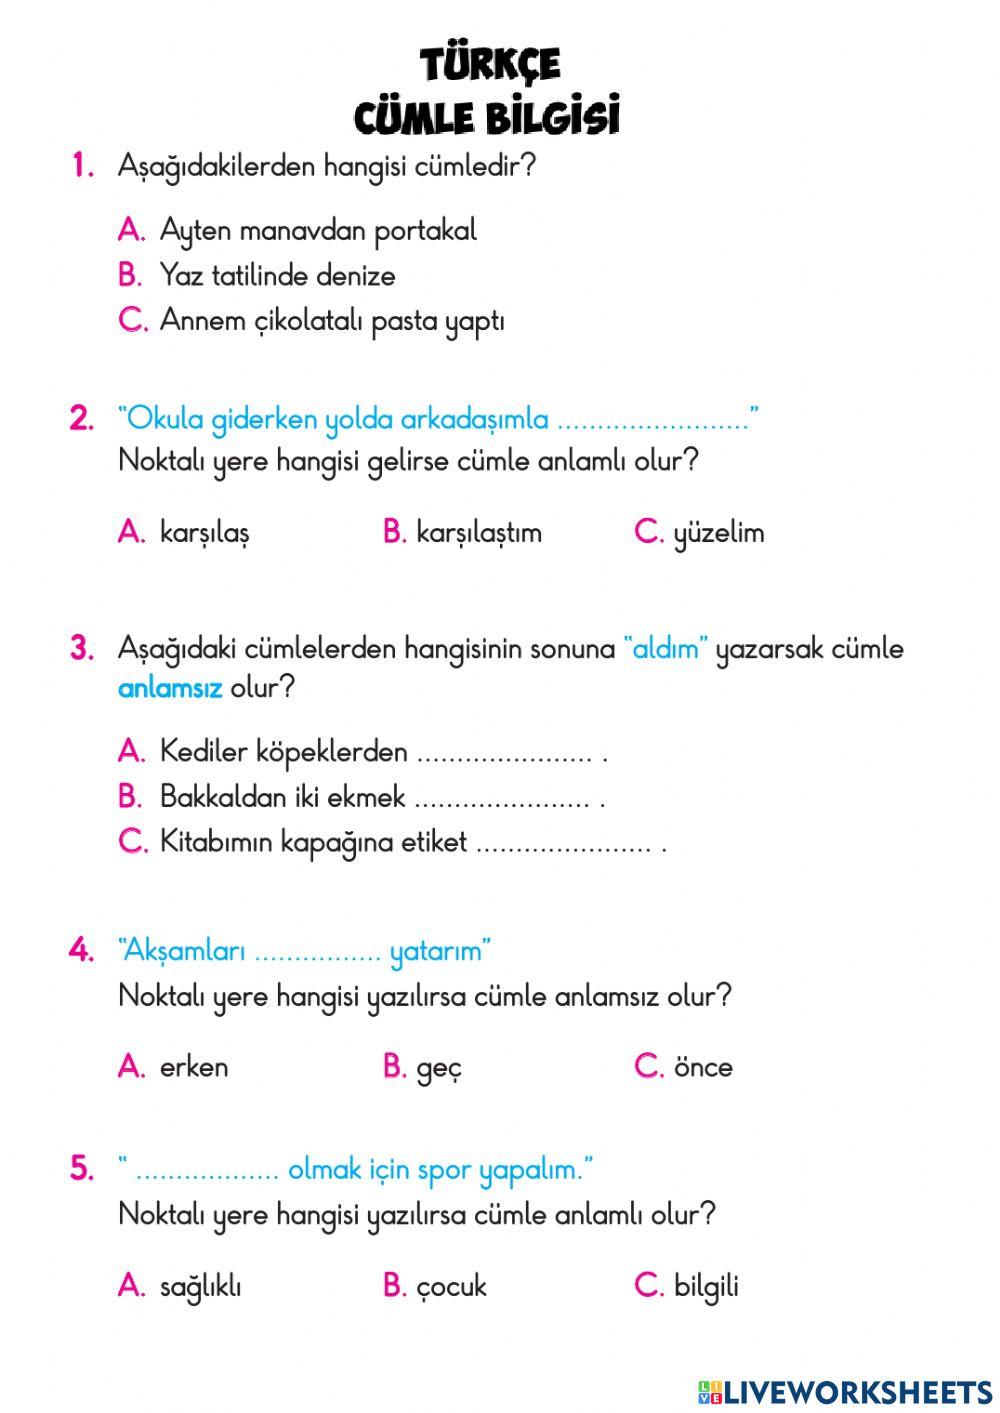 TEST-Türkçe Cümle Bilgisi